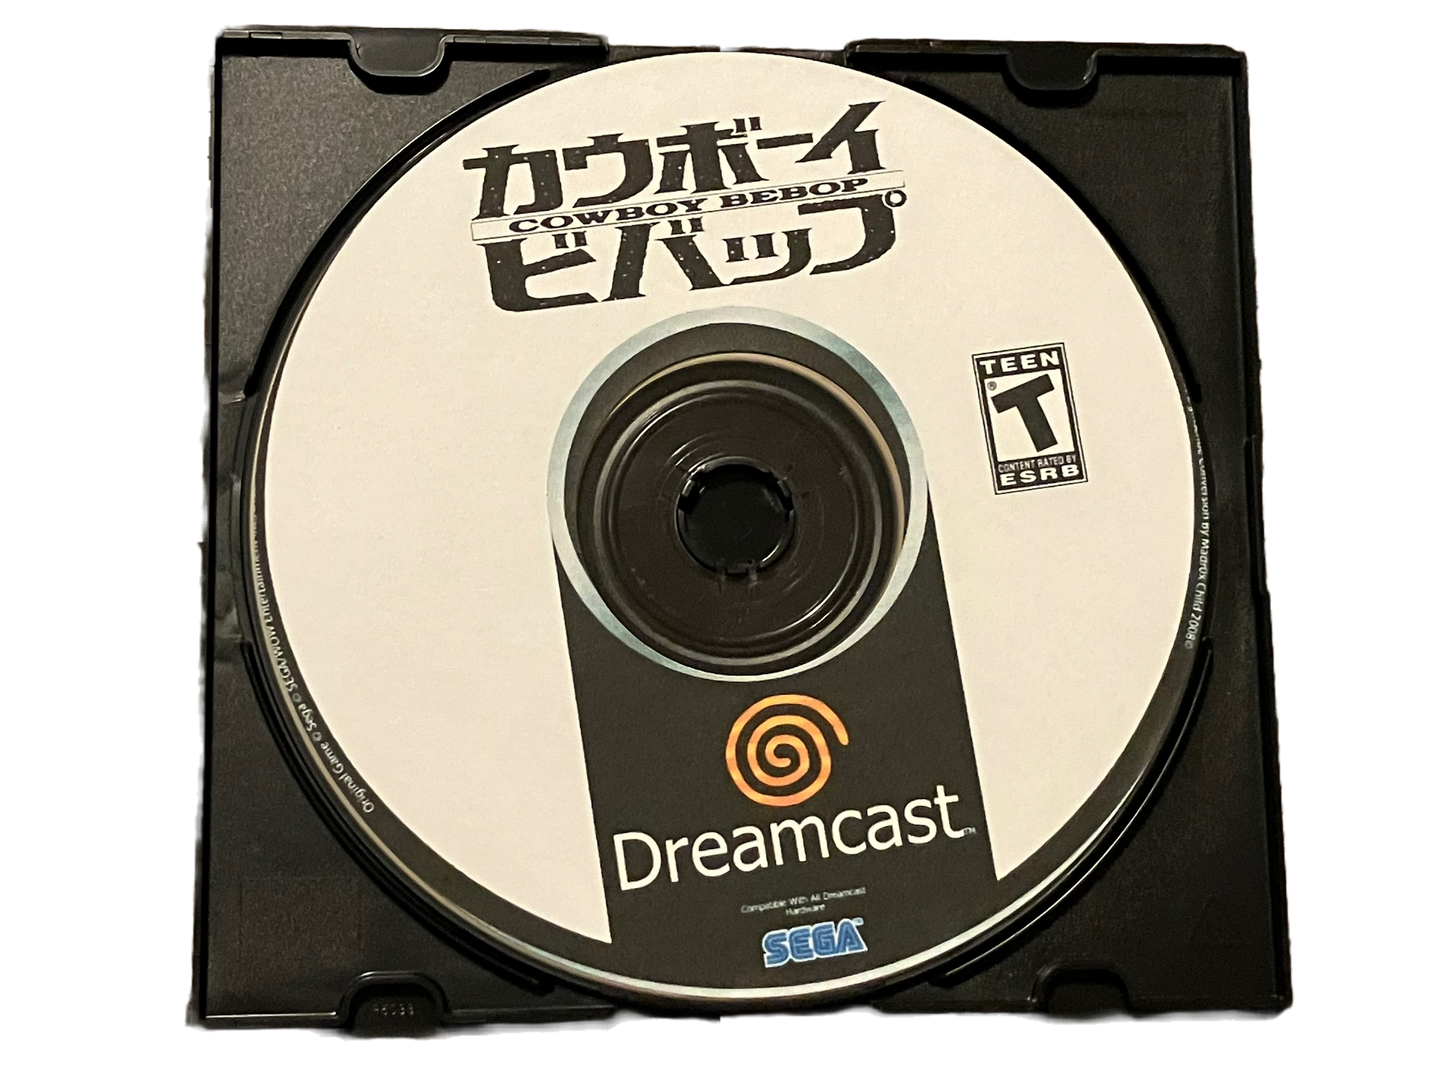 Cowboy Bebop Sega Dreamcast Game